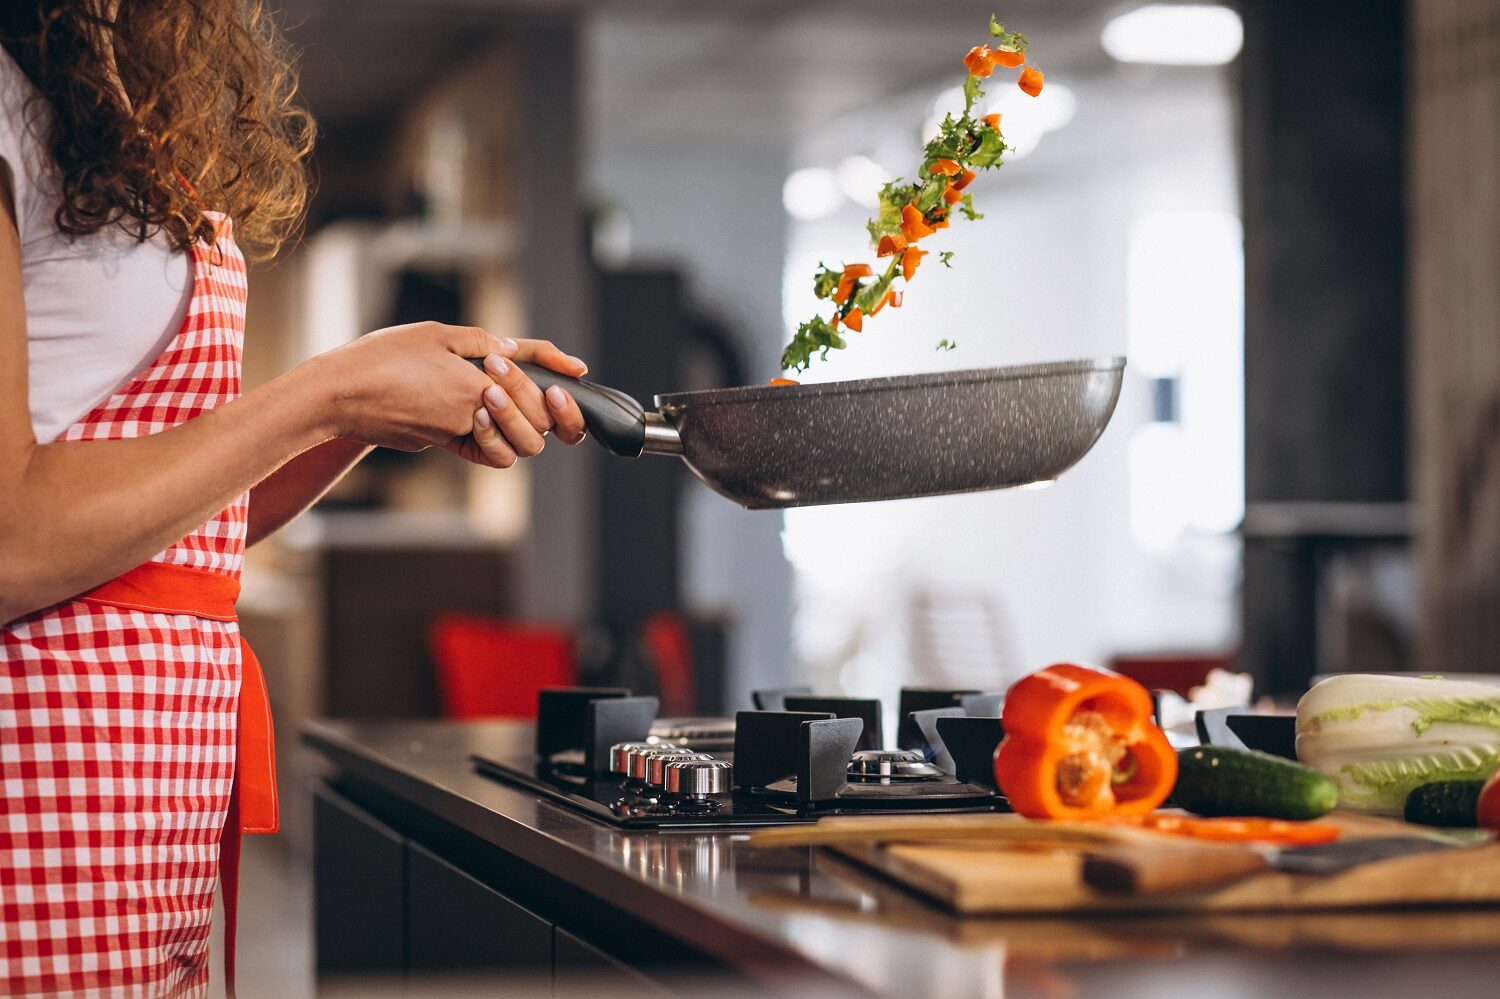 Bucatareasa care gateste legume la tigaie, imagine reprezentativă pentru ce greșești când gătești